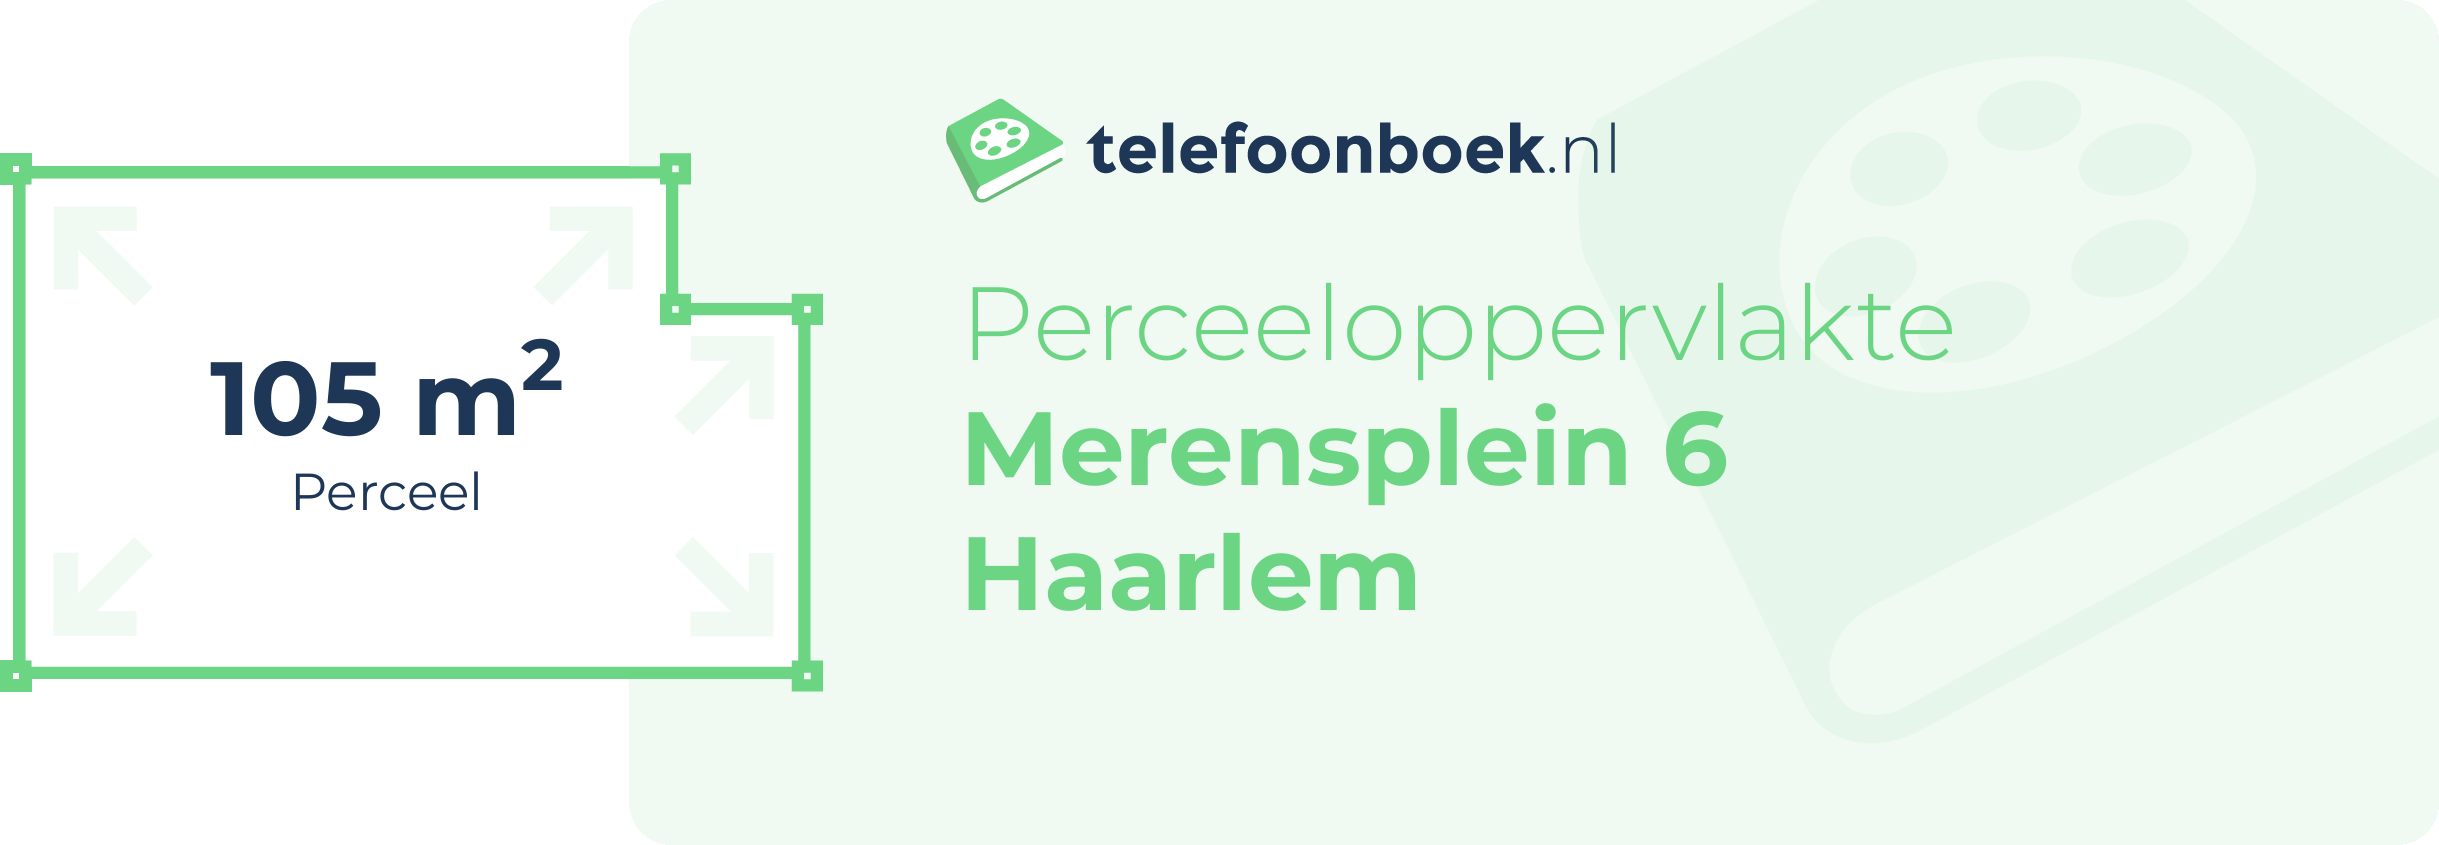 Perceeloppervlakte Merensplein 6 Haarlem